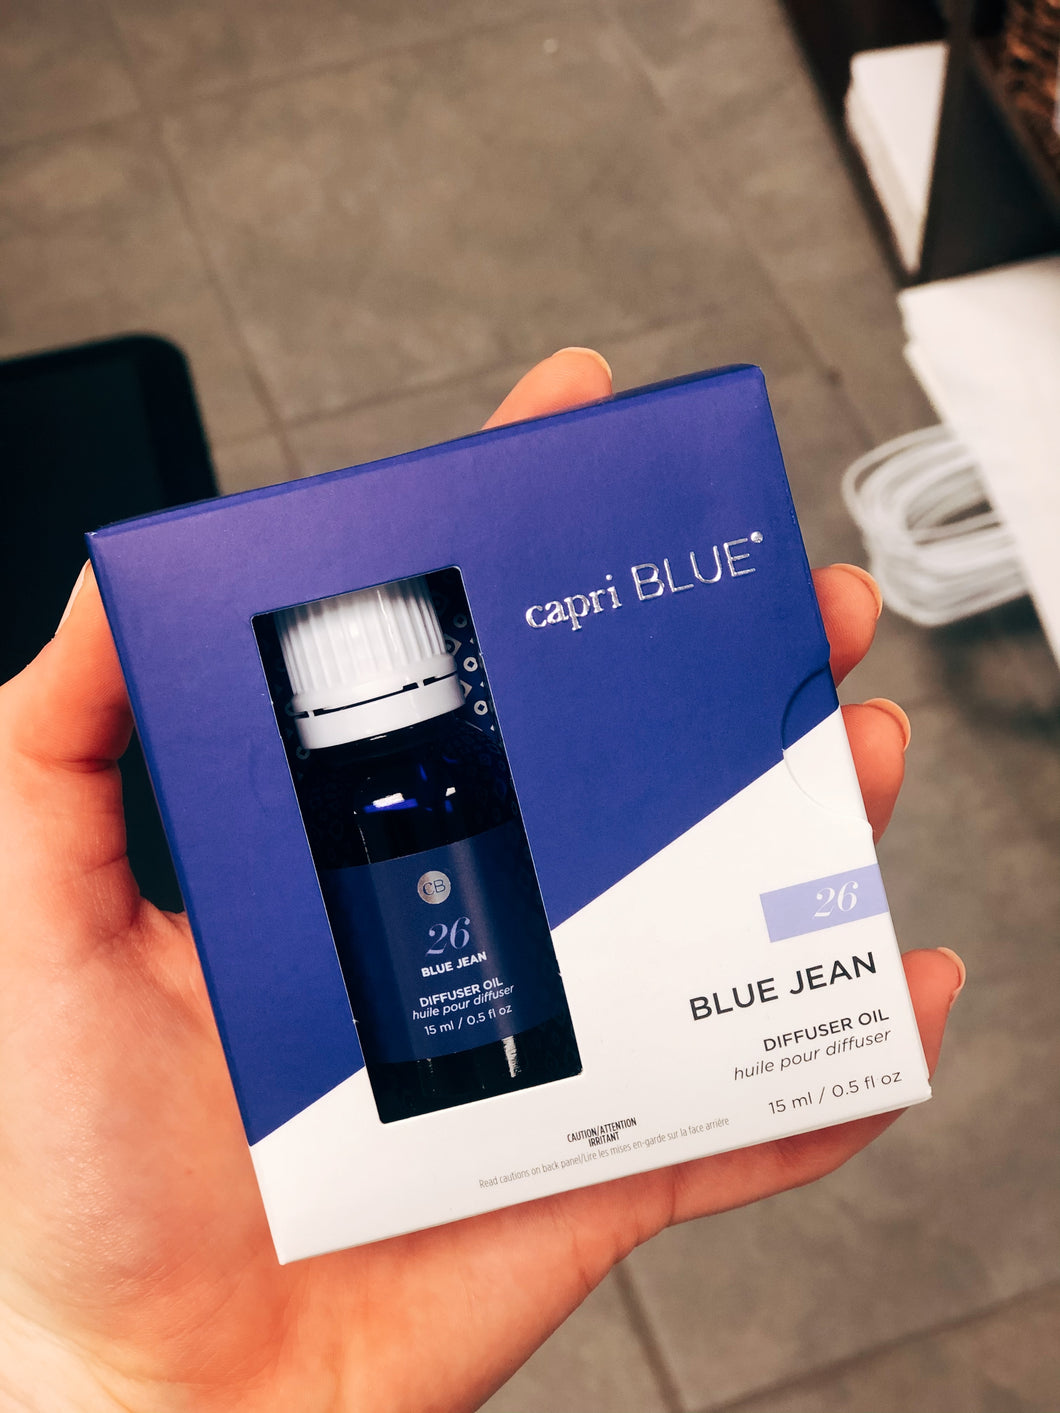 Blue Jean diffuser oil